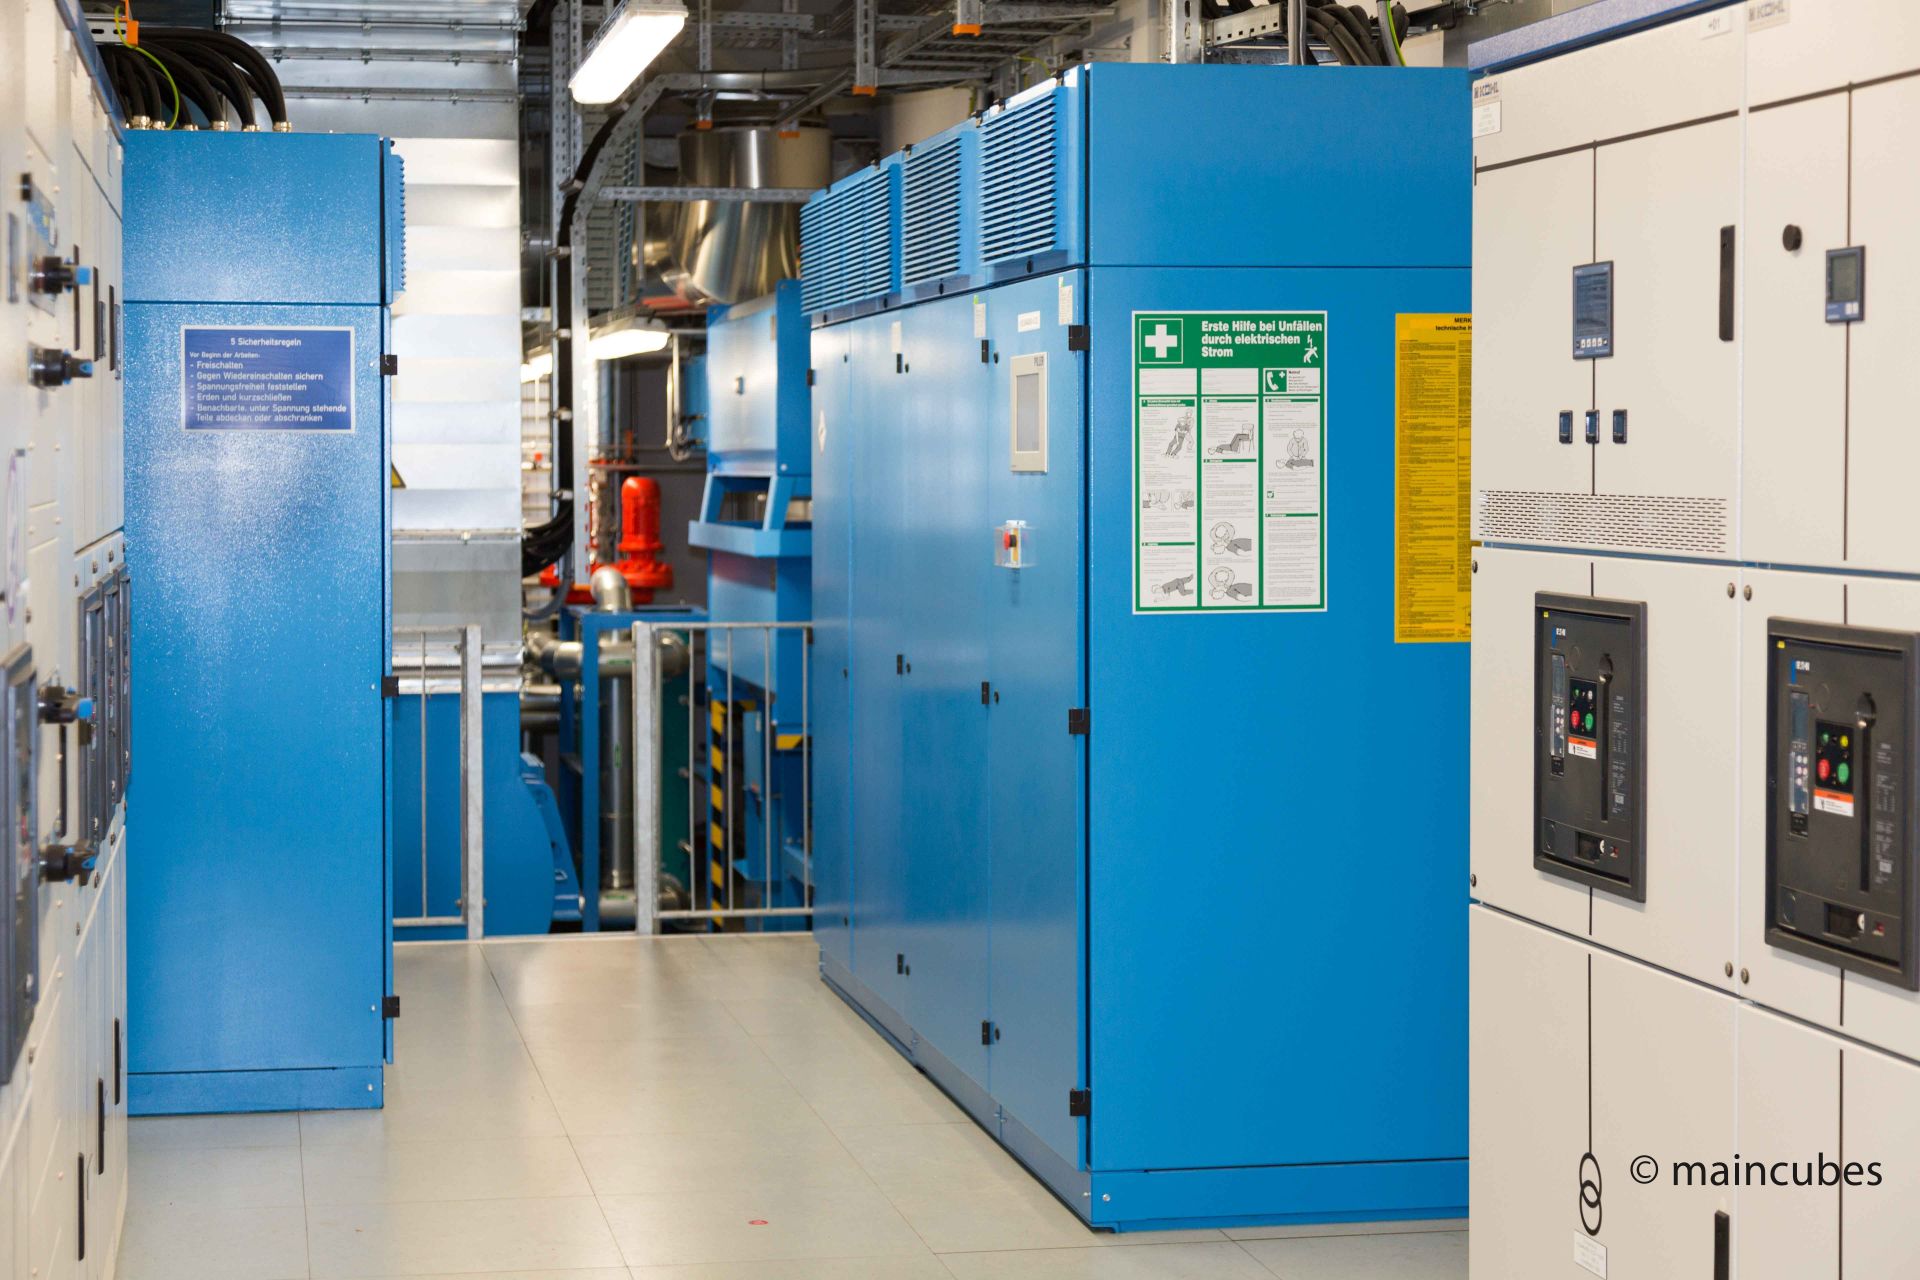 Generator-Raum des maincubes FRA-01, im Hintergrund der Dieselgenerator in blau für Stromausfälle. Links und rechts Schaltschränke